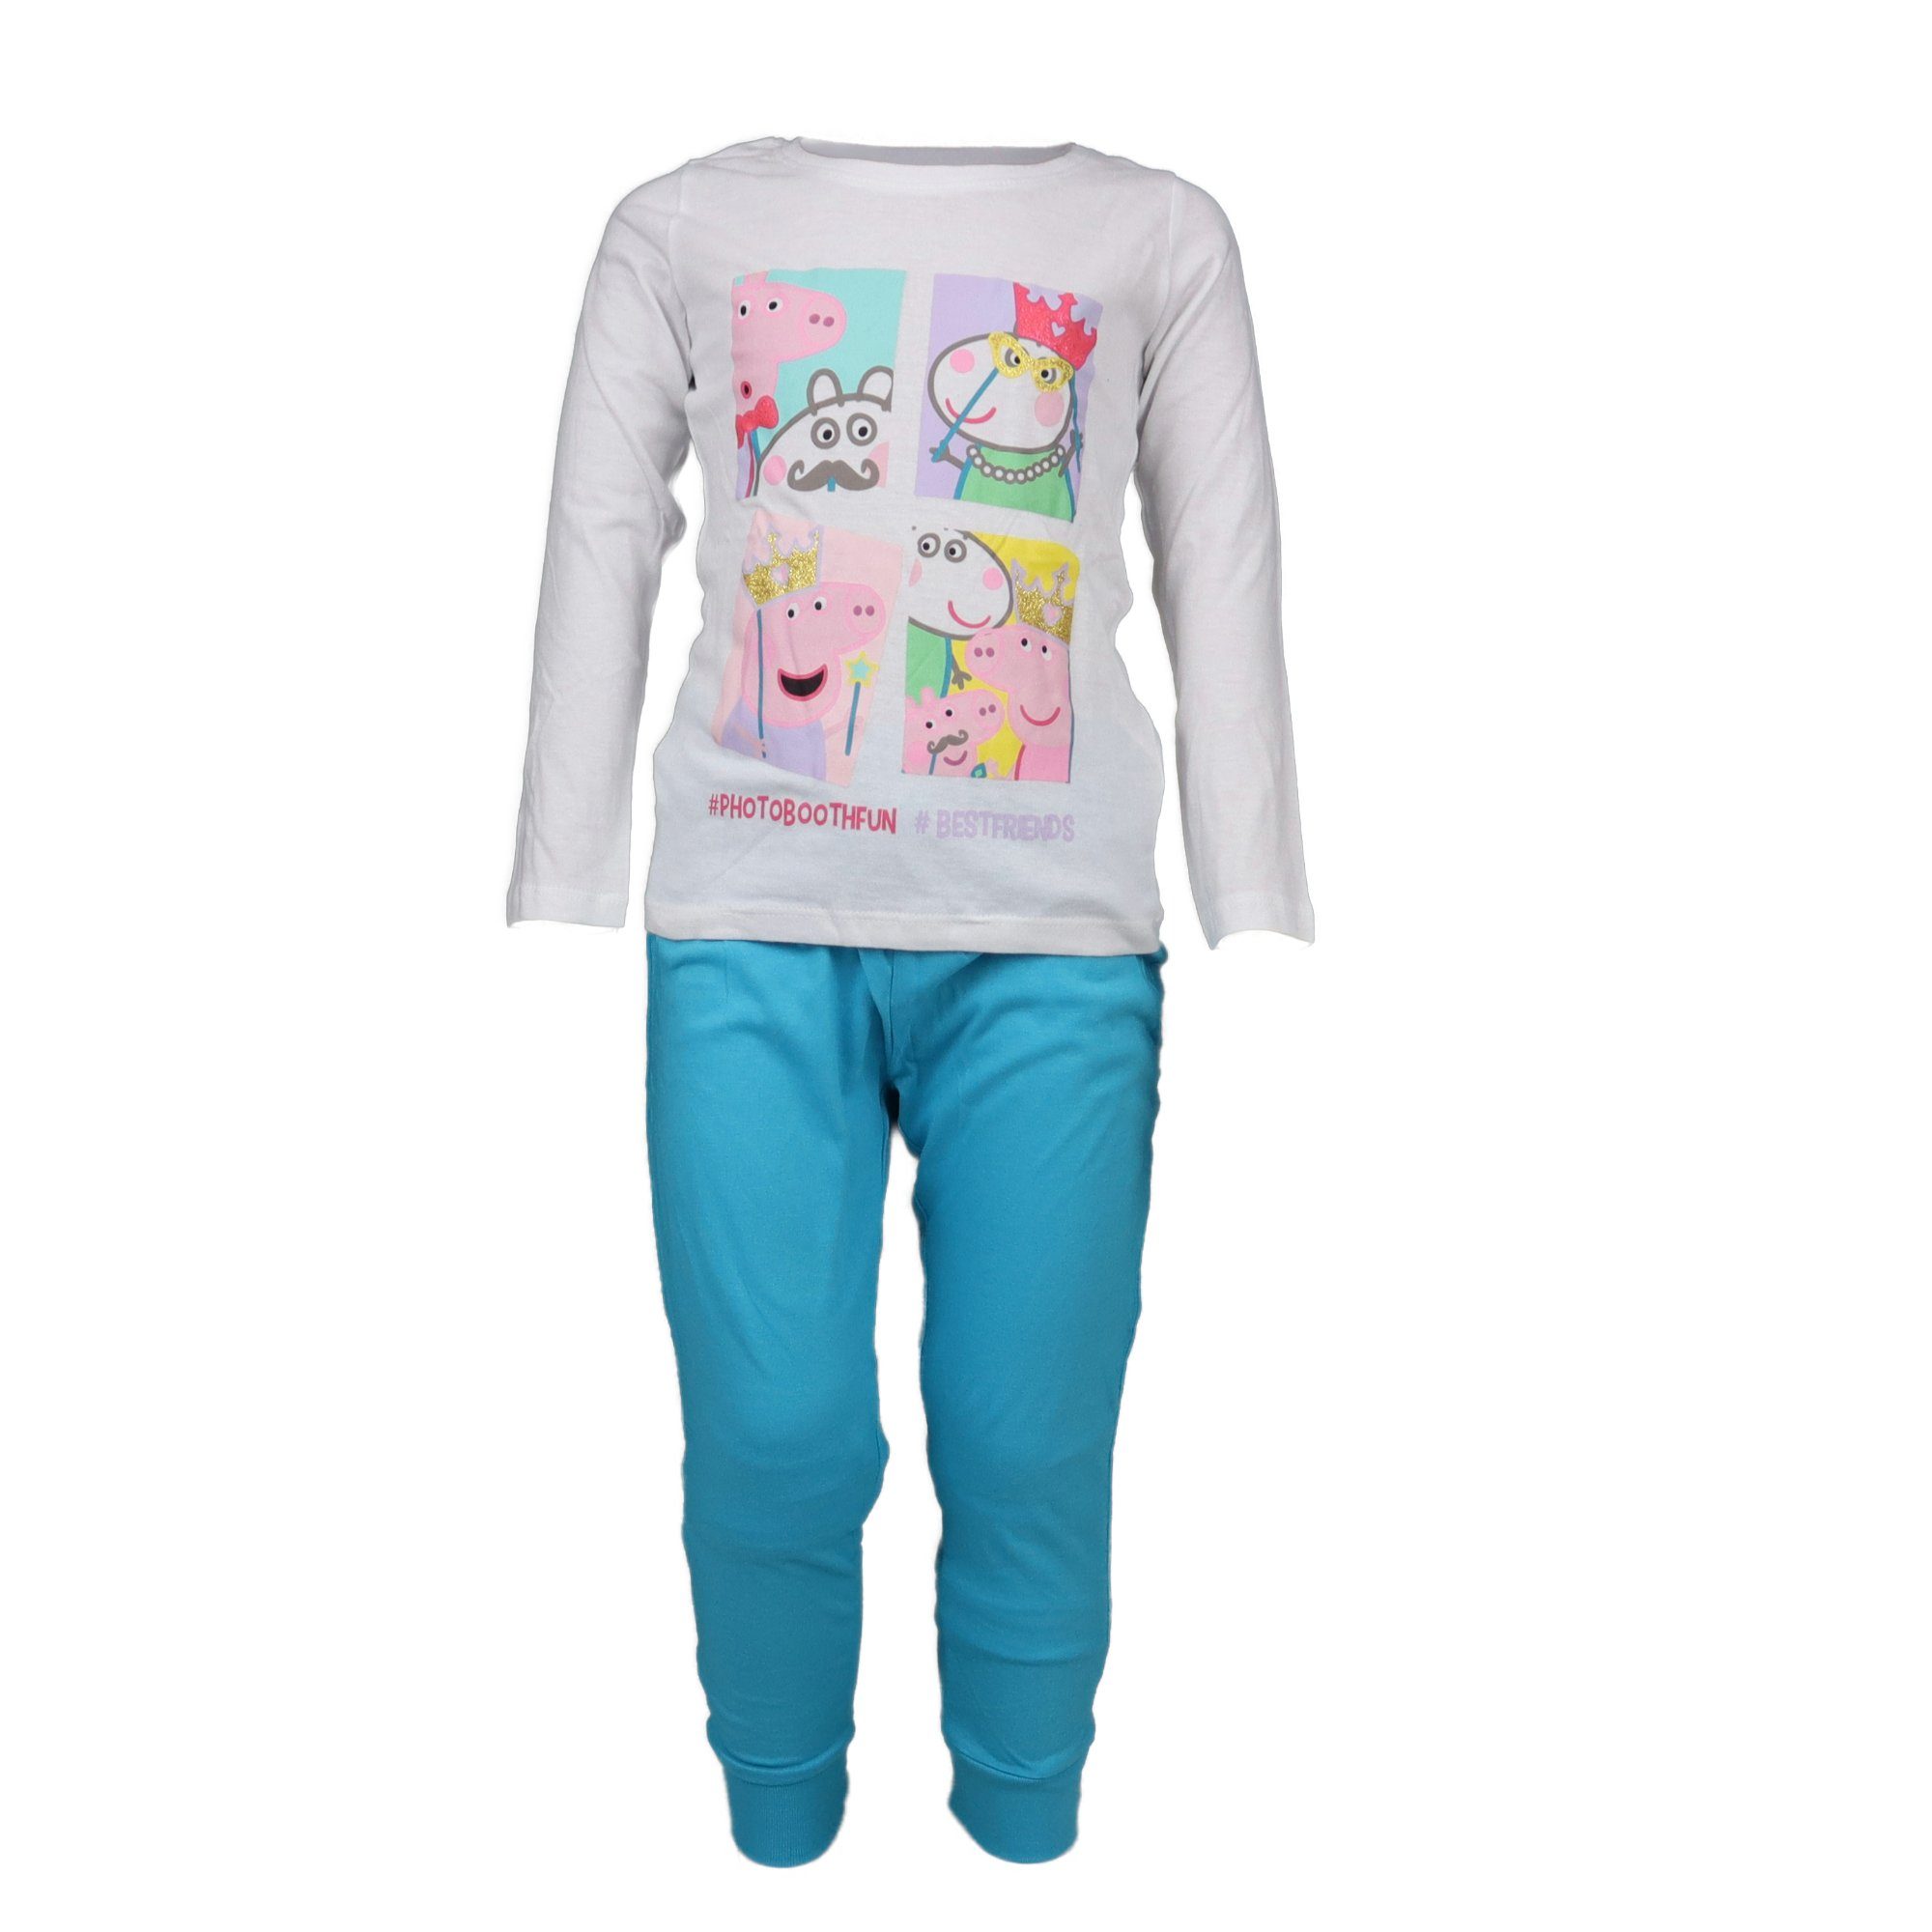 Peppa Pig Schlafanzug Wutz Kinder Pyjama Gr. 92 bis 116 Weiß/Blau